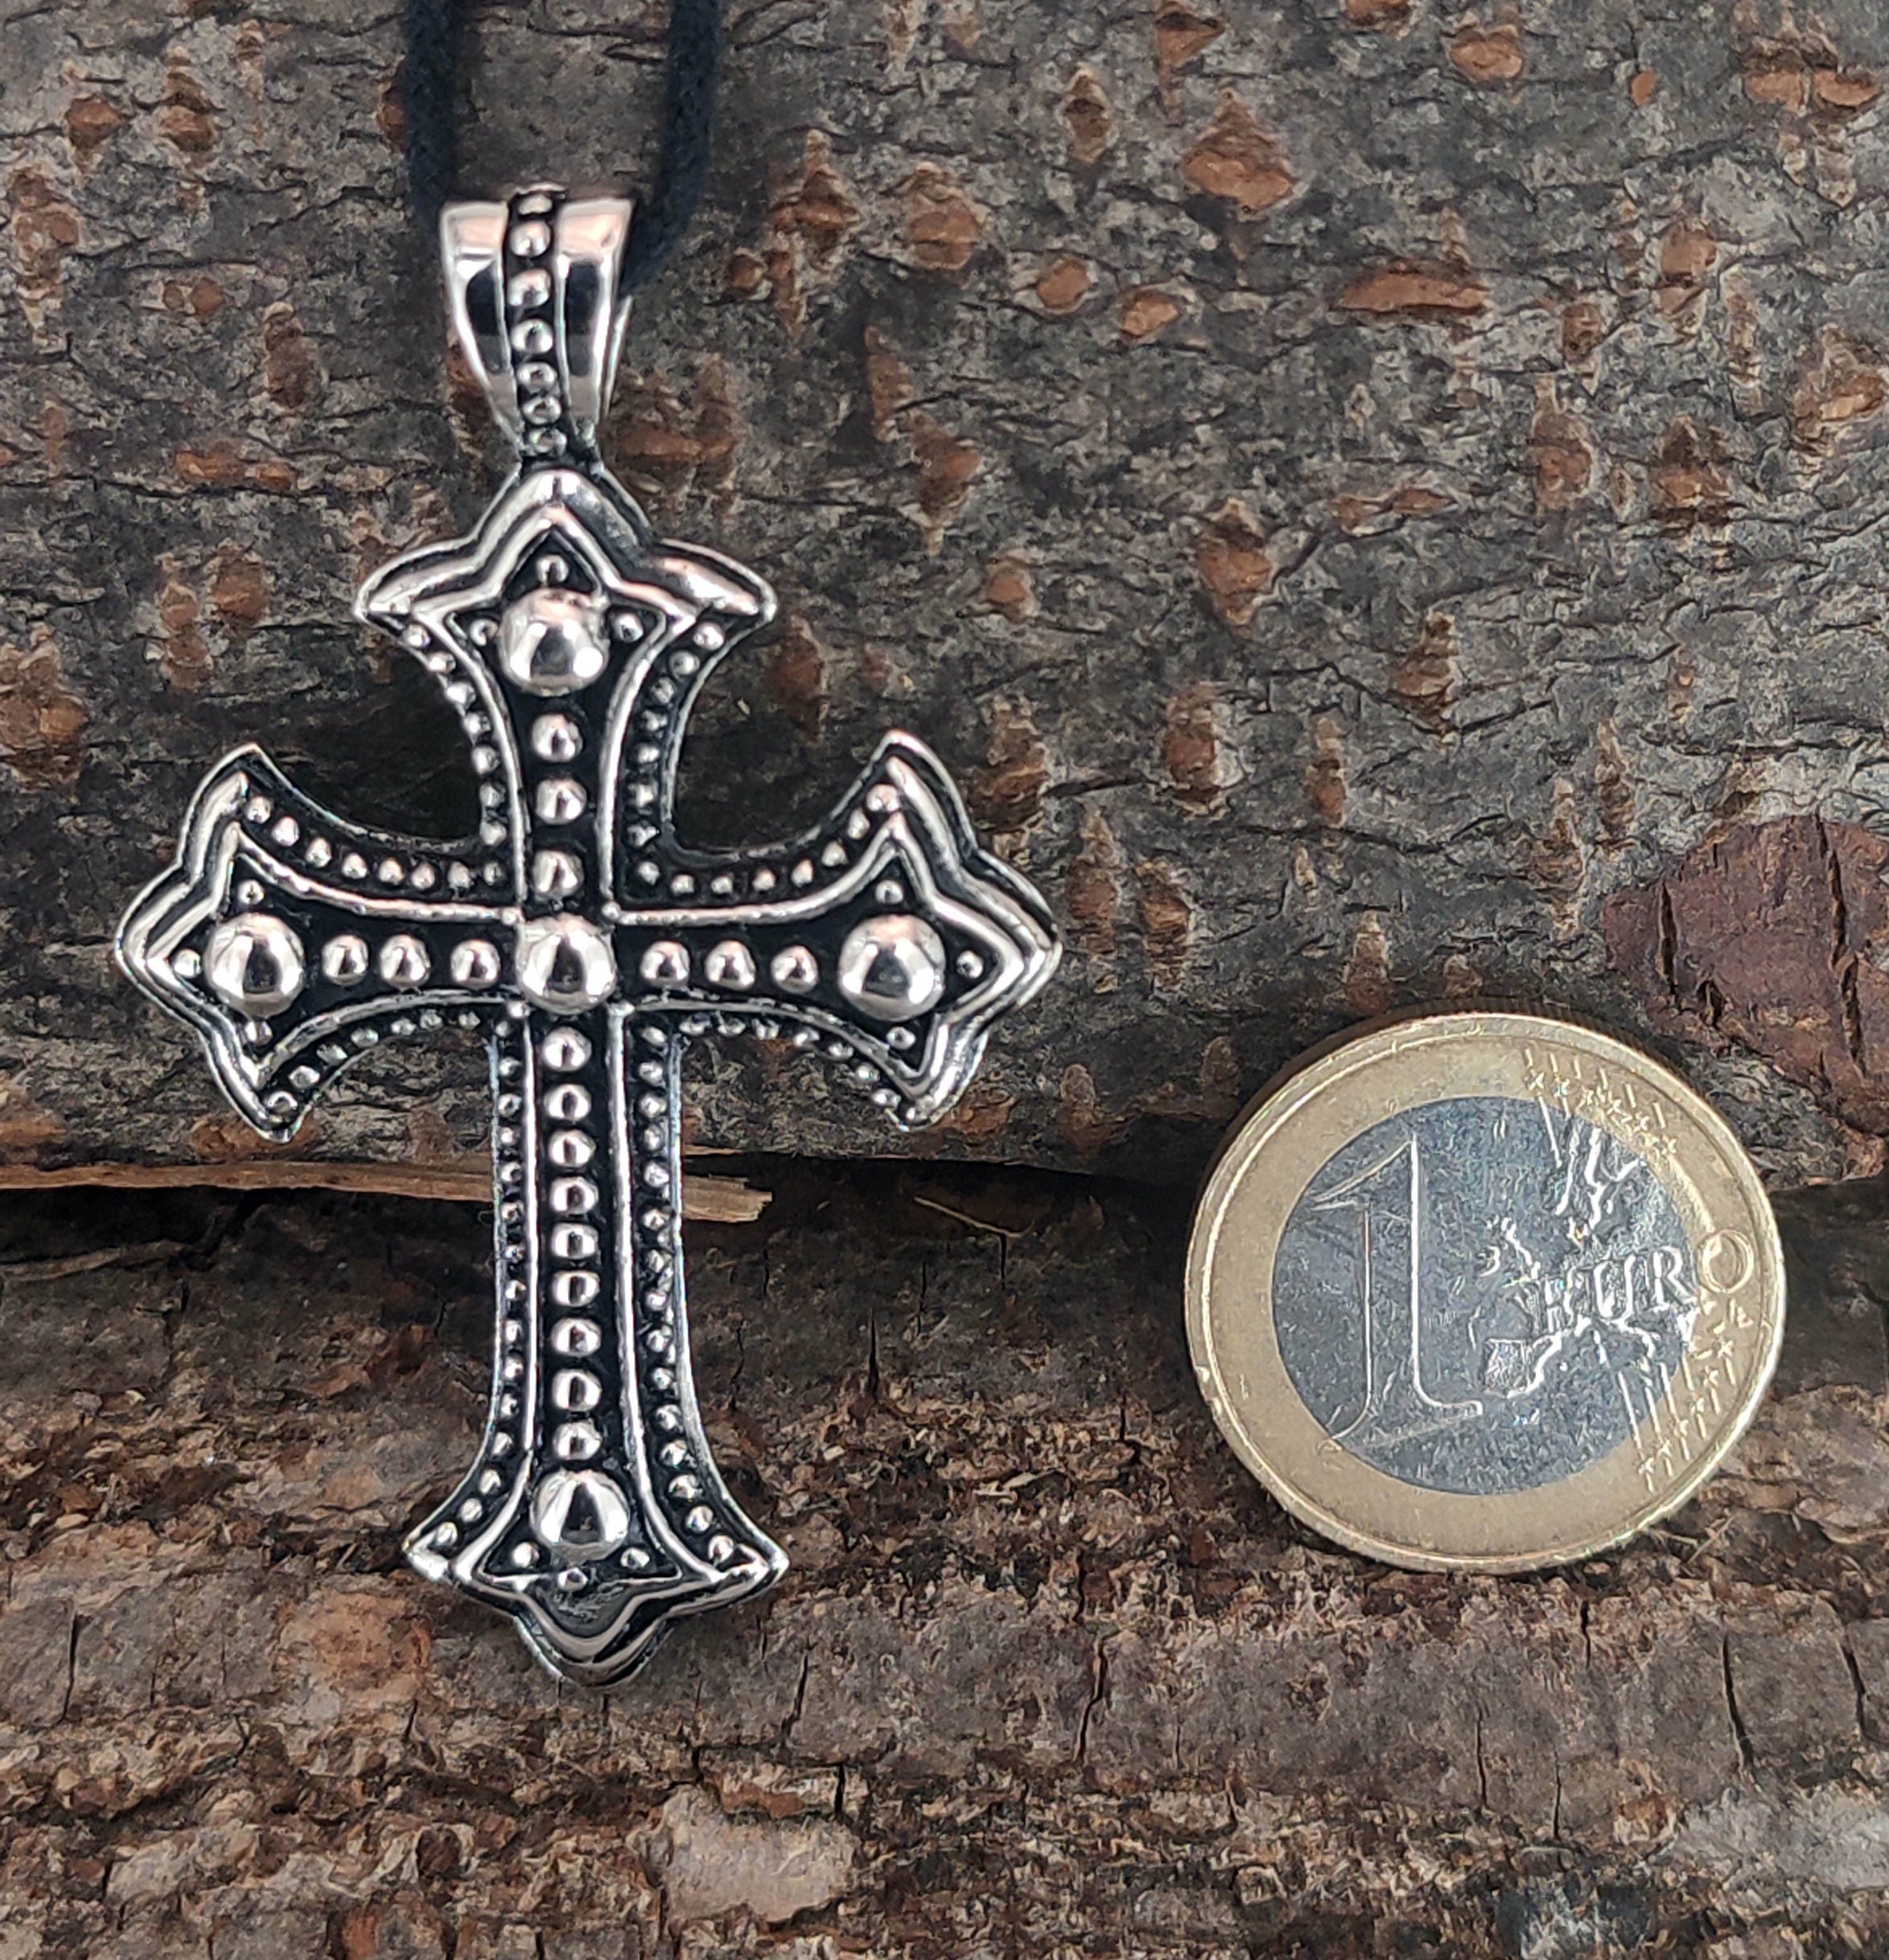 Leather Cross Edelstahl Kettenanhänger Kreuz aus christlich Kiss verzierter of schön Anhänger mit